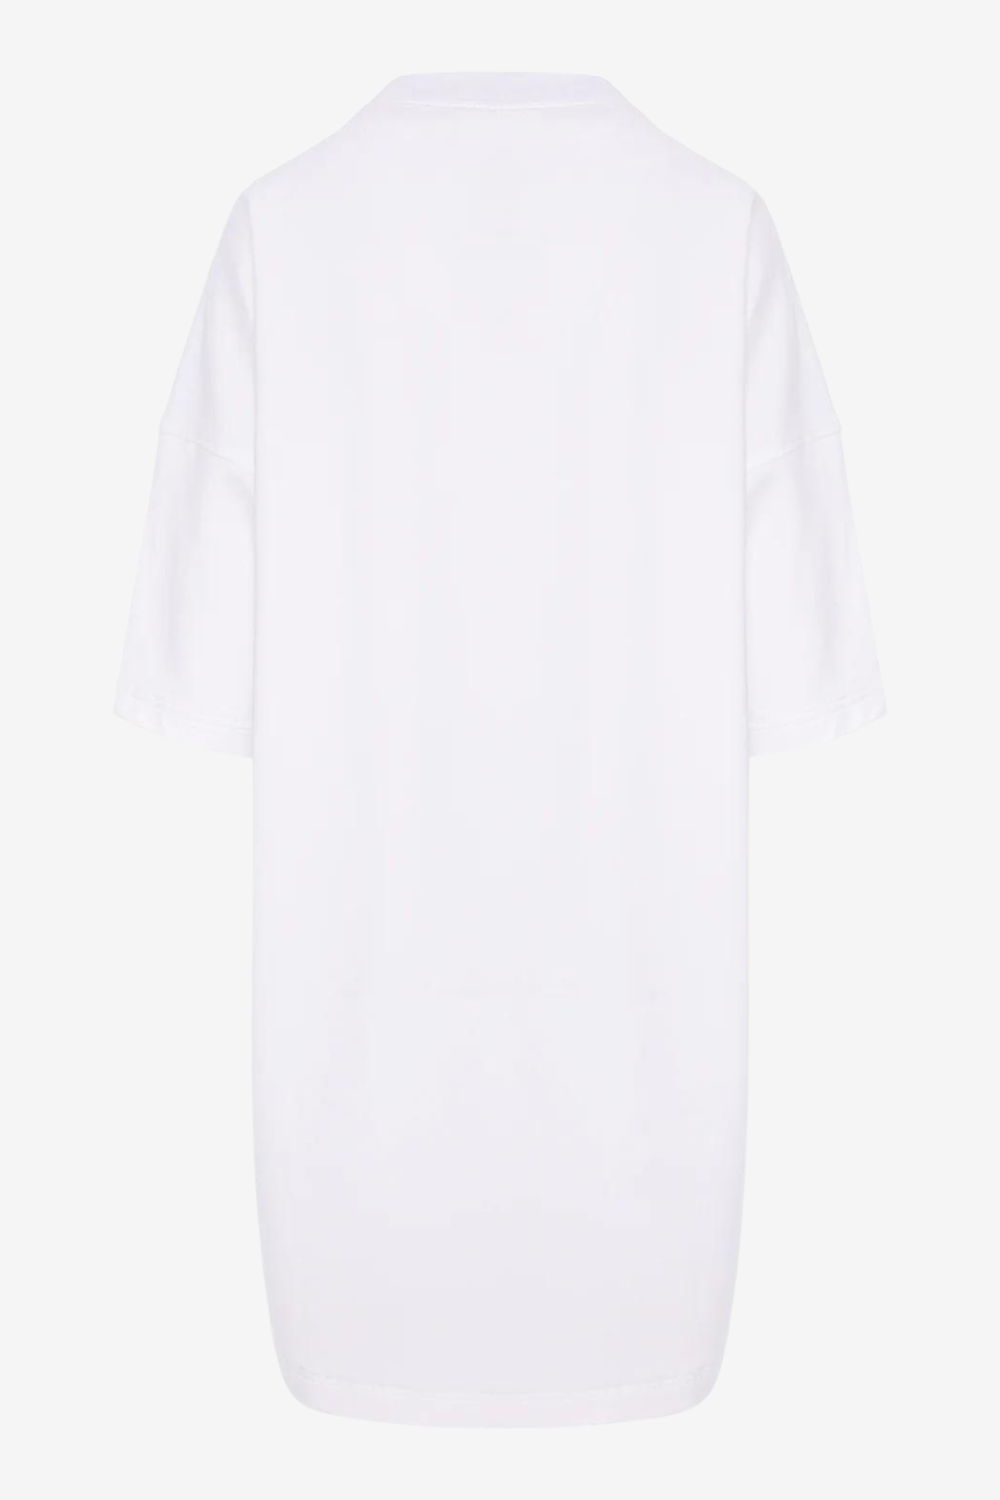 Rochie-tricou damă, albă, imprimeu Lingerie, bumbac premium, croială oversized, detalii elegante (umeri căzuți).